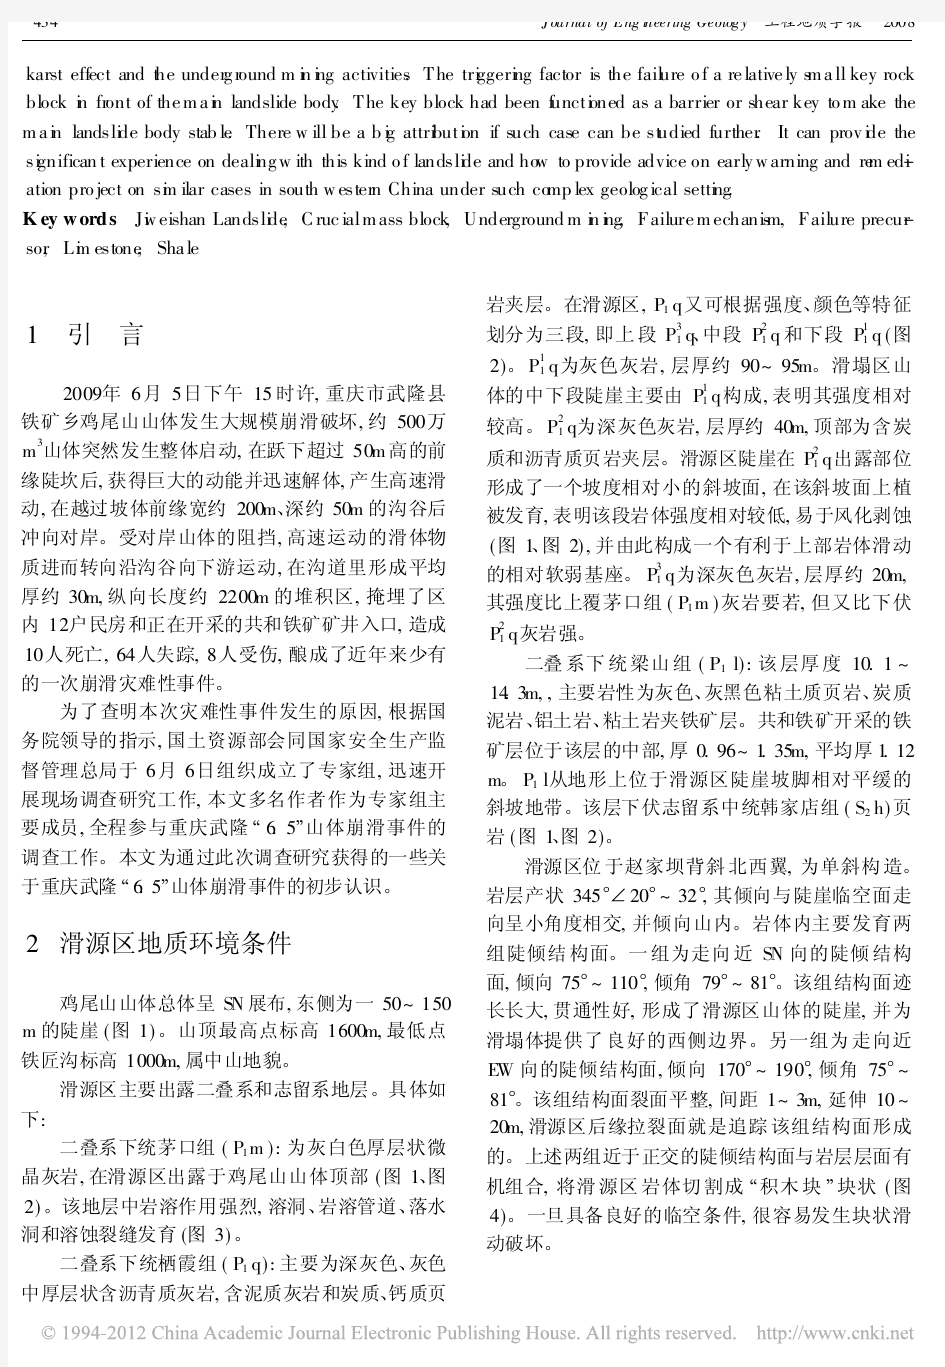 2009年6_5重庆武隆鸡尾山崩滑灾害基本特征与成因机理初步研究